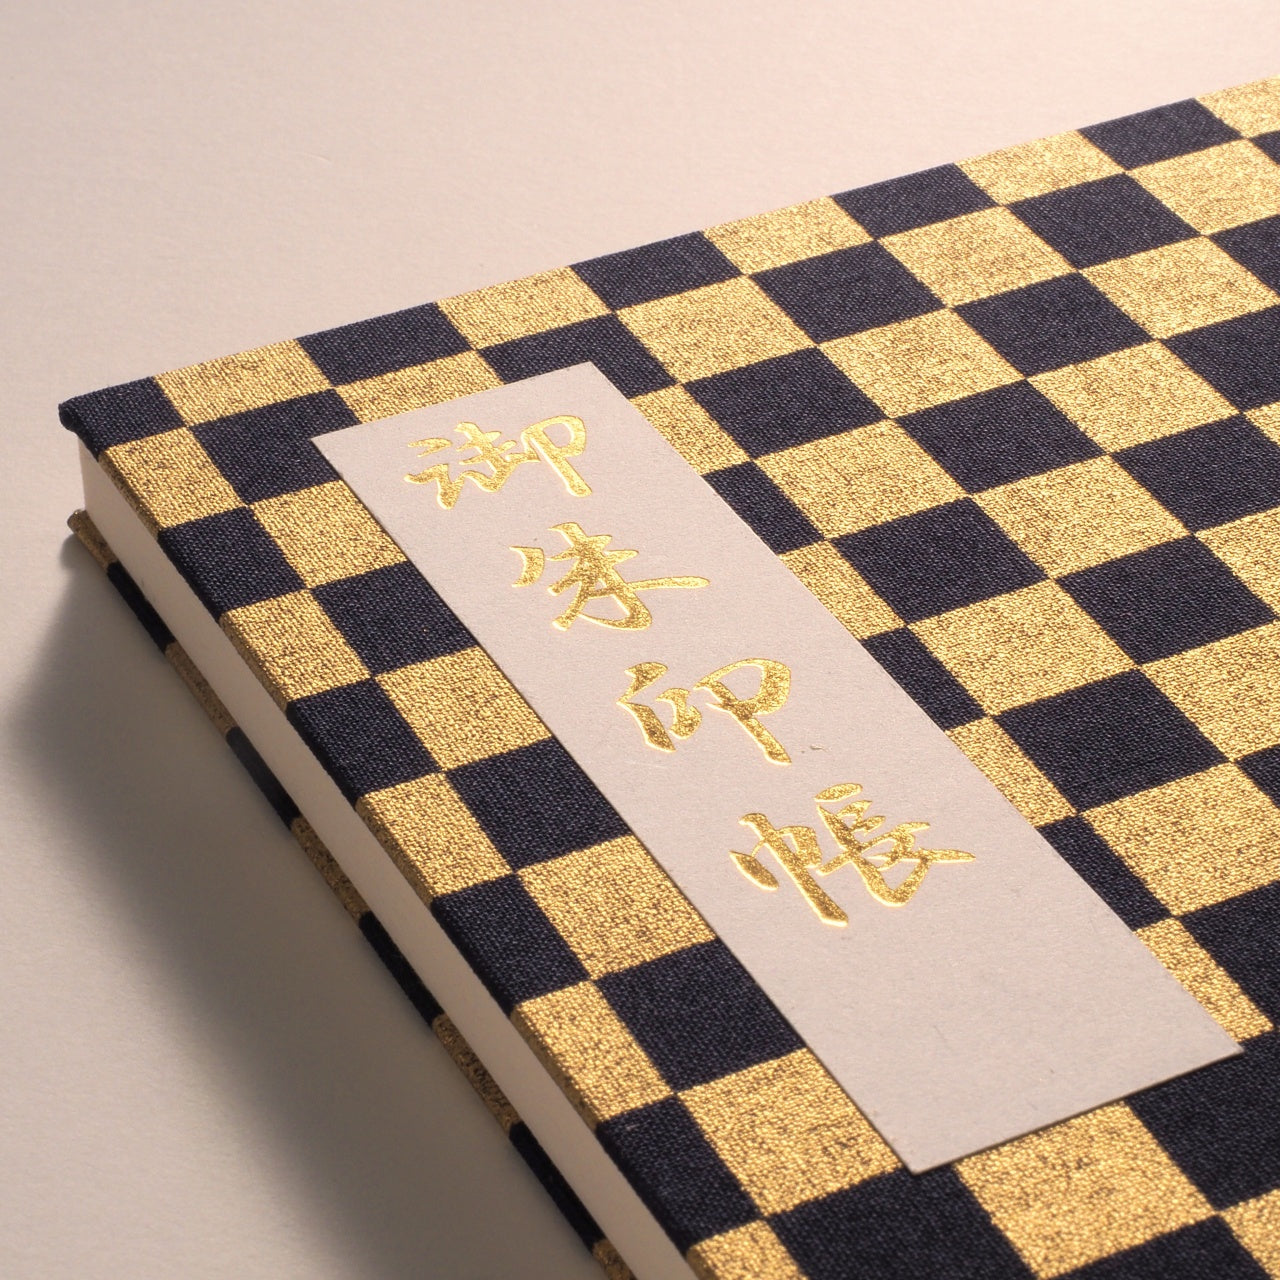 Goshuin book “Golden Ichimatsu” Tomekon